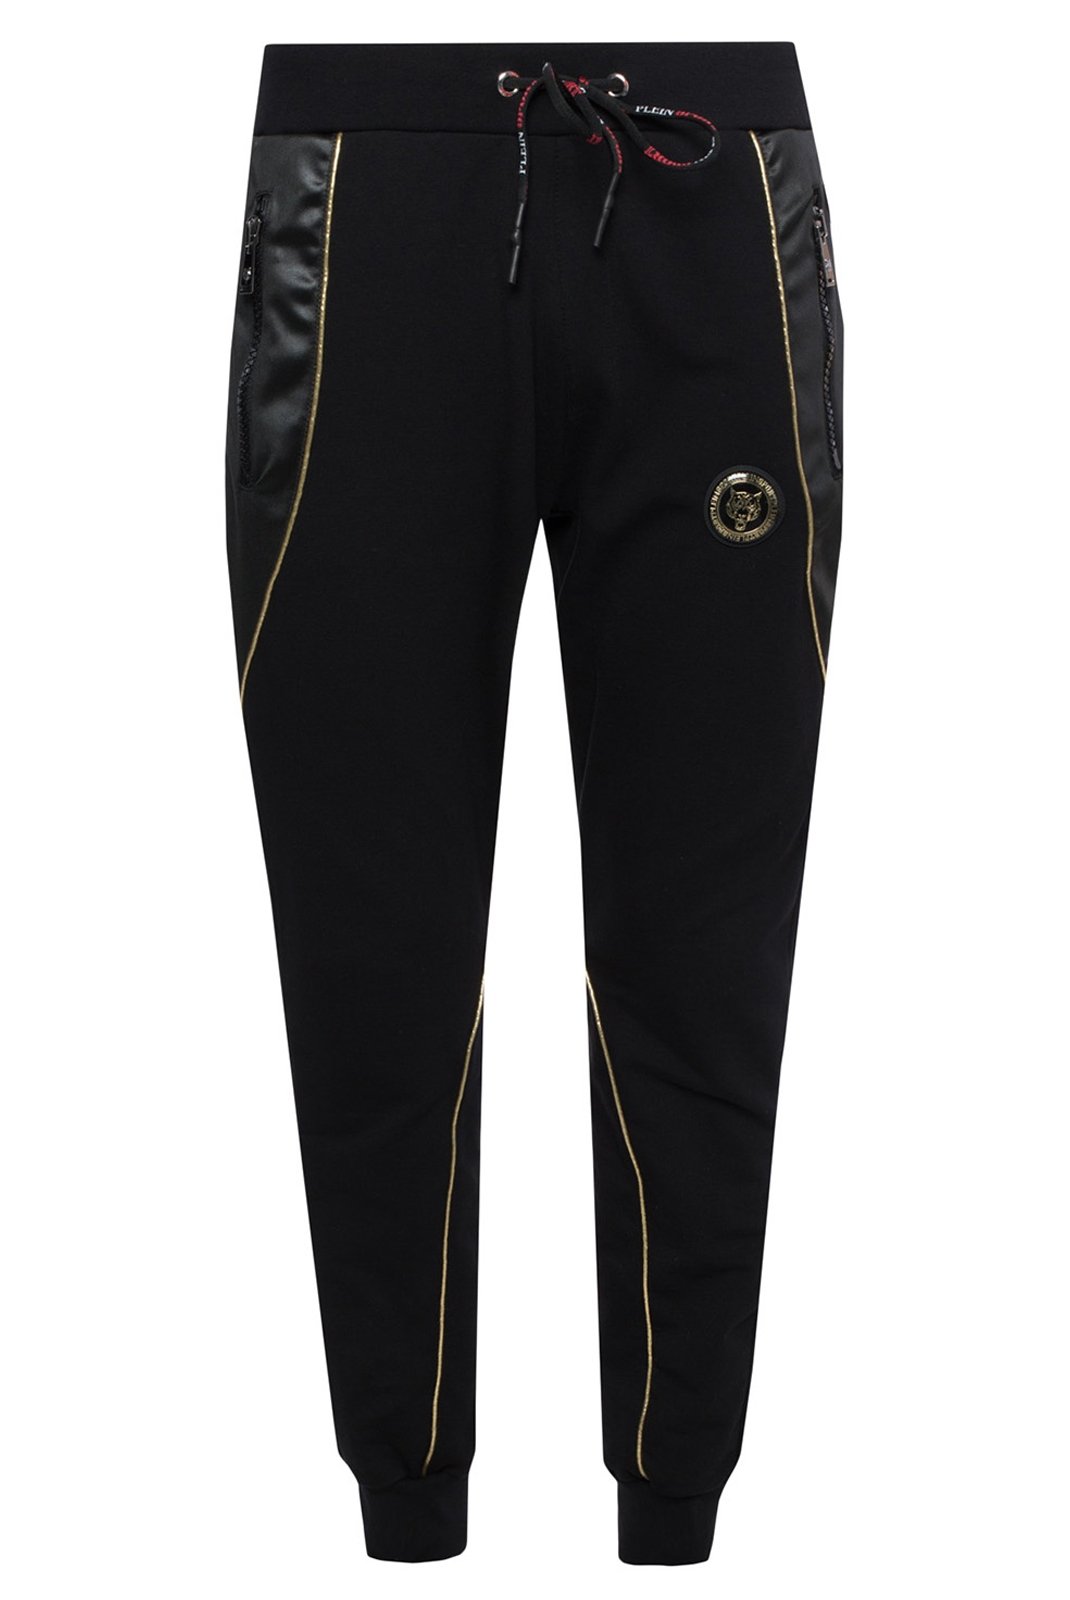 Pantalons sport/streetwear  Plein Sport MJT0449 BLACK/GOLD